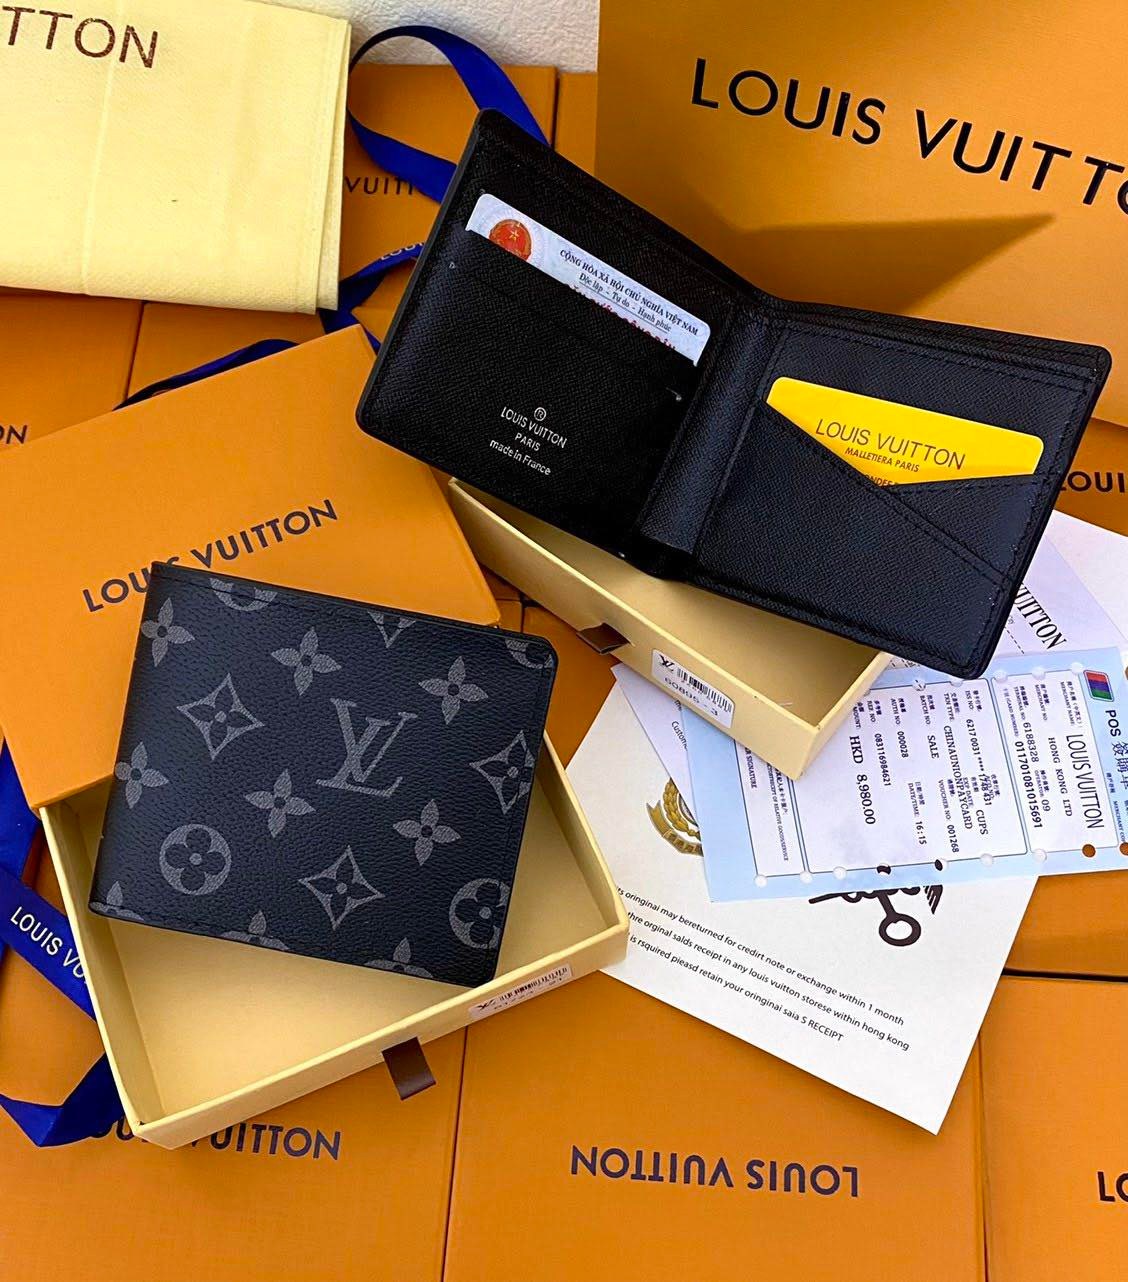 Đồng hồ Louis Vuitton Fake  Đồng hồ nữ giá tốt nhất thị trường Việt Nam